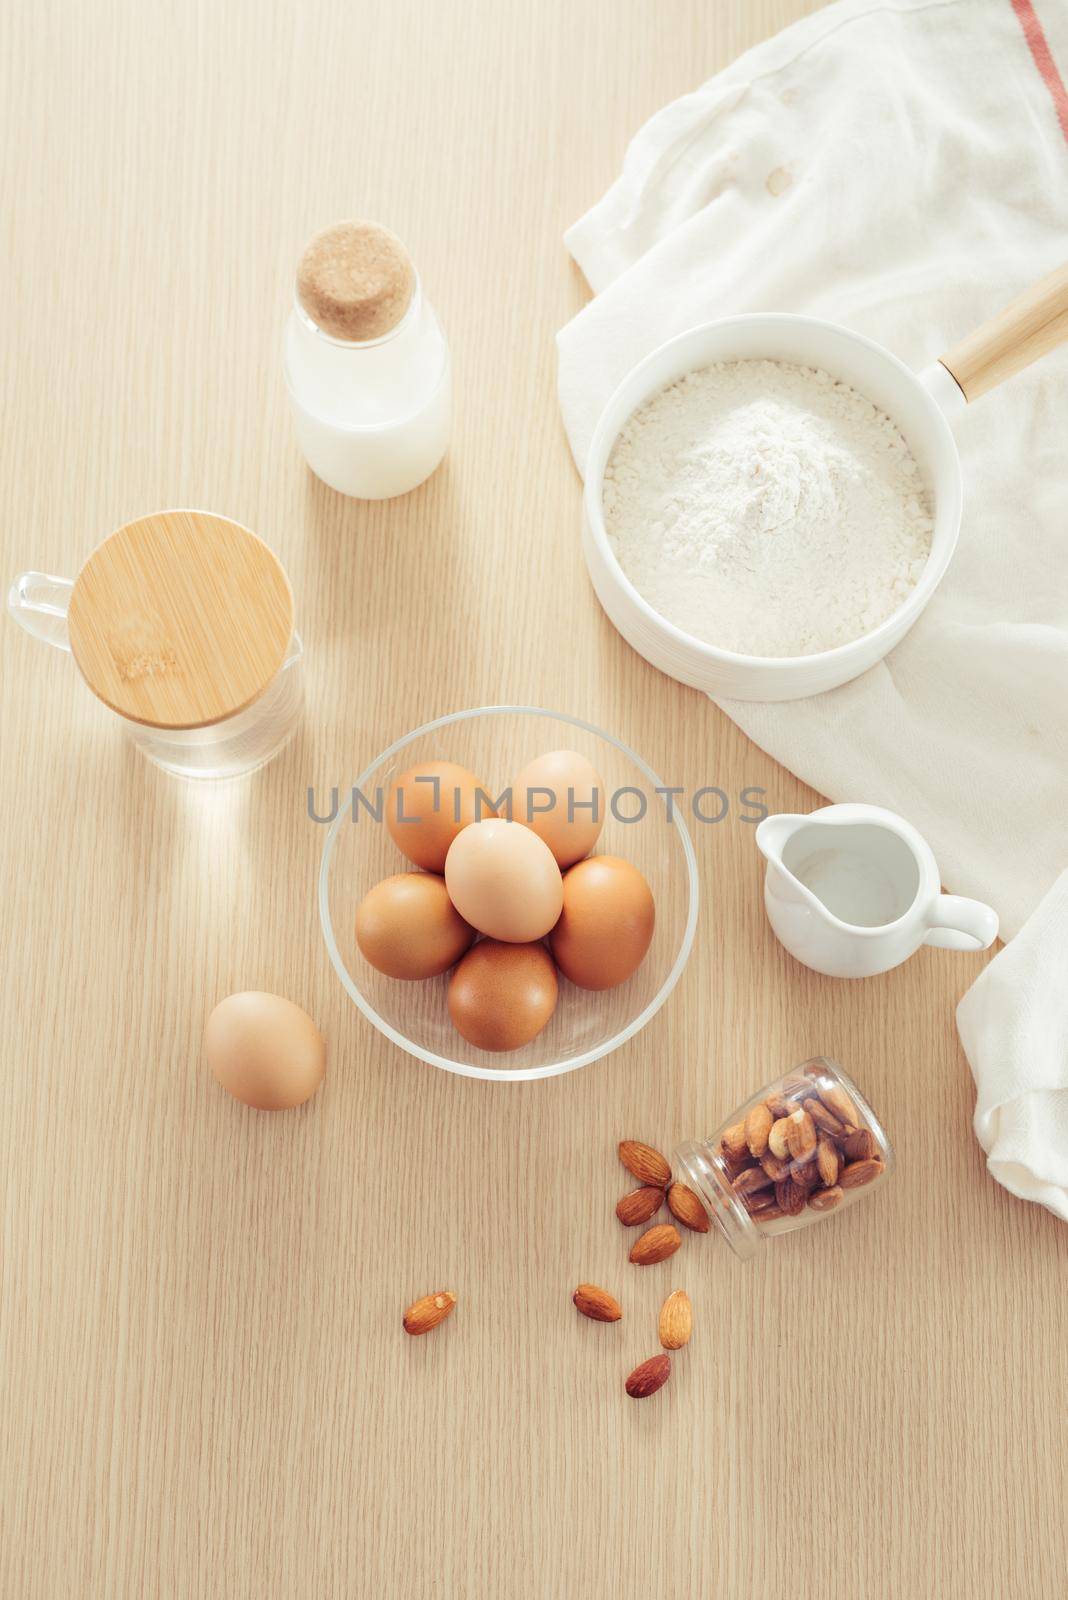 recipe ingredients : eggs, flour, milk, almonds, banana on white background